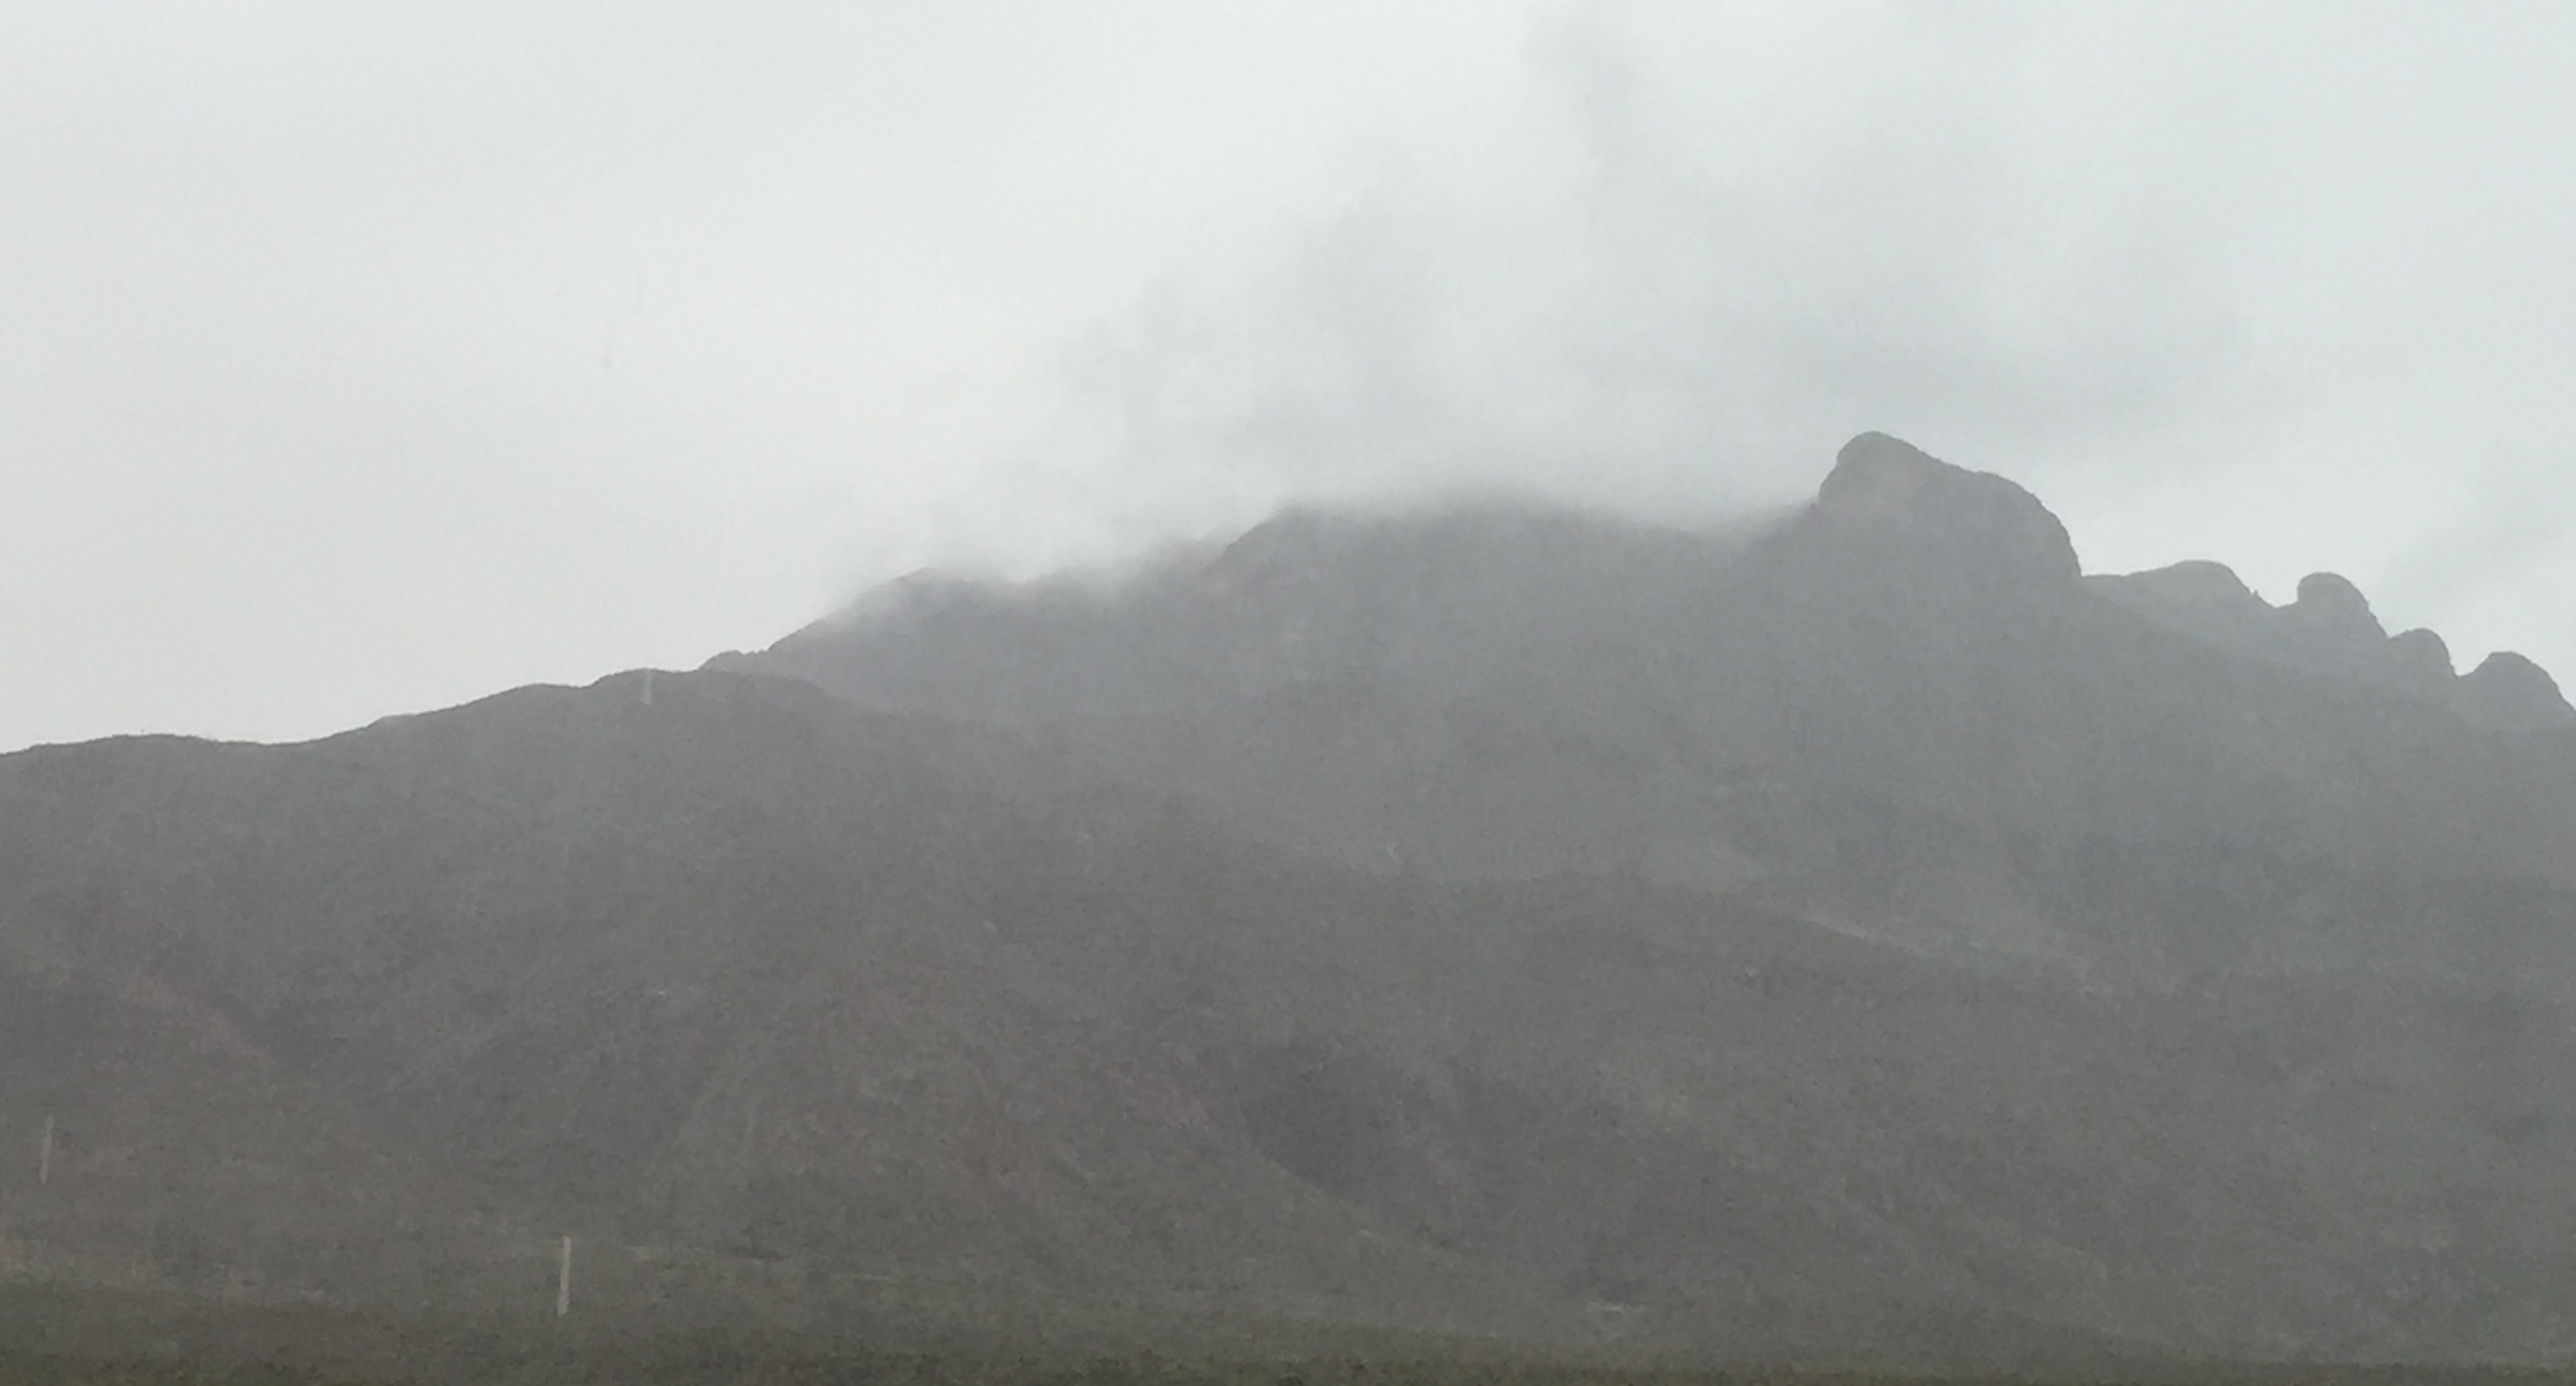 The foggy Franklin Mountain.